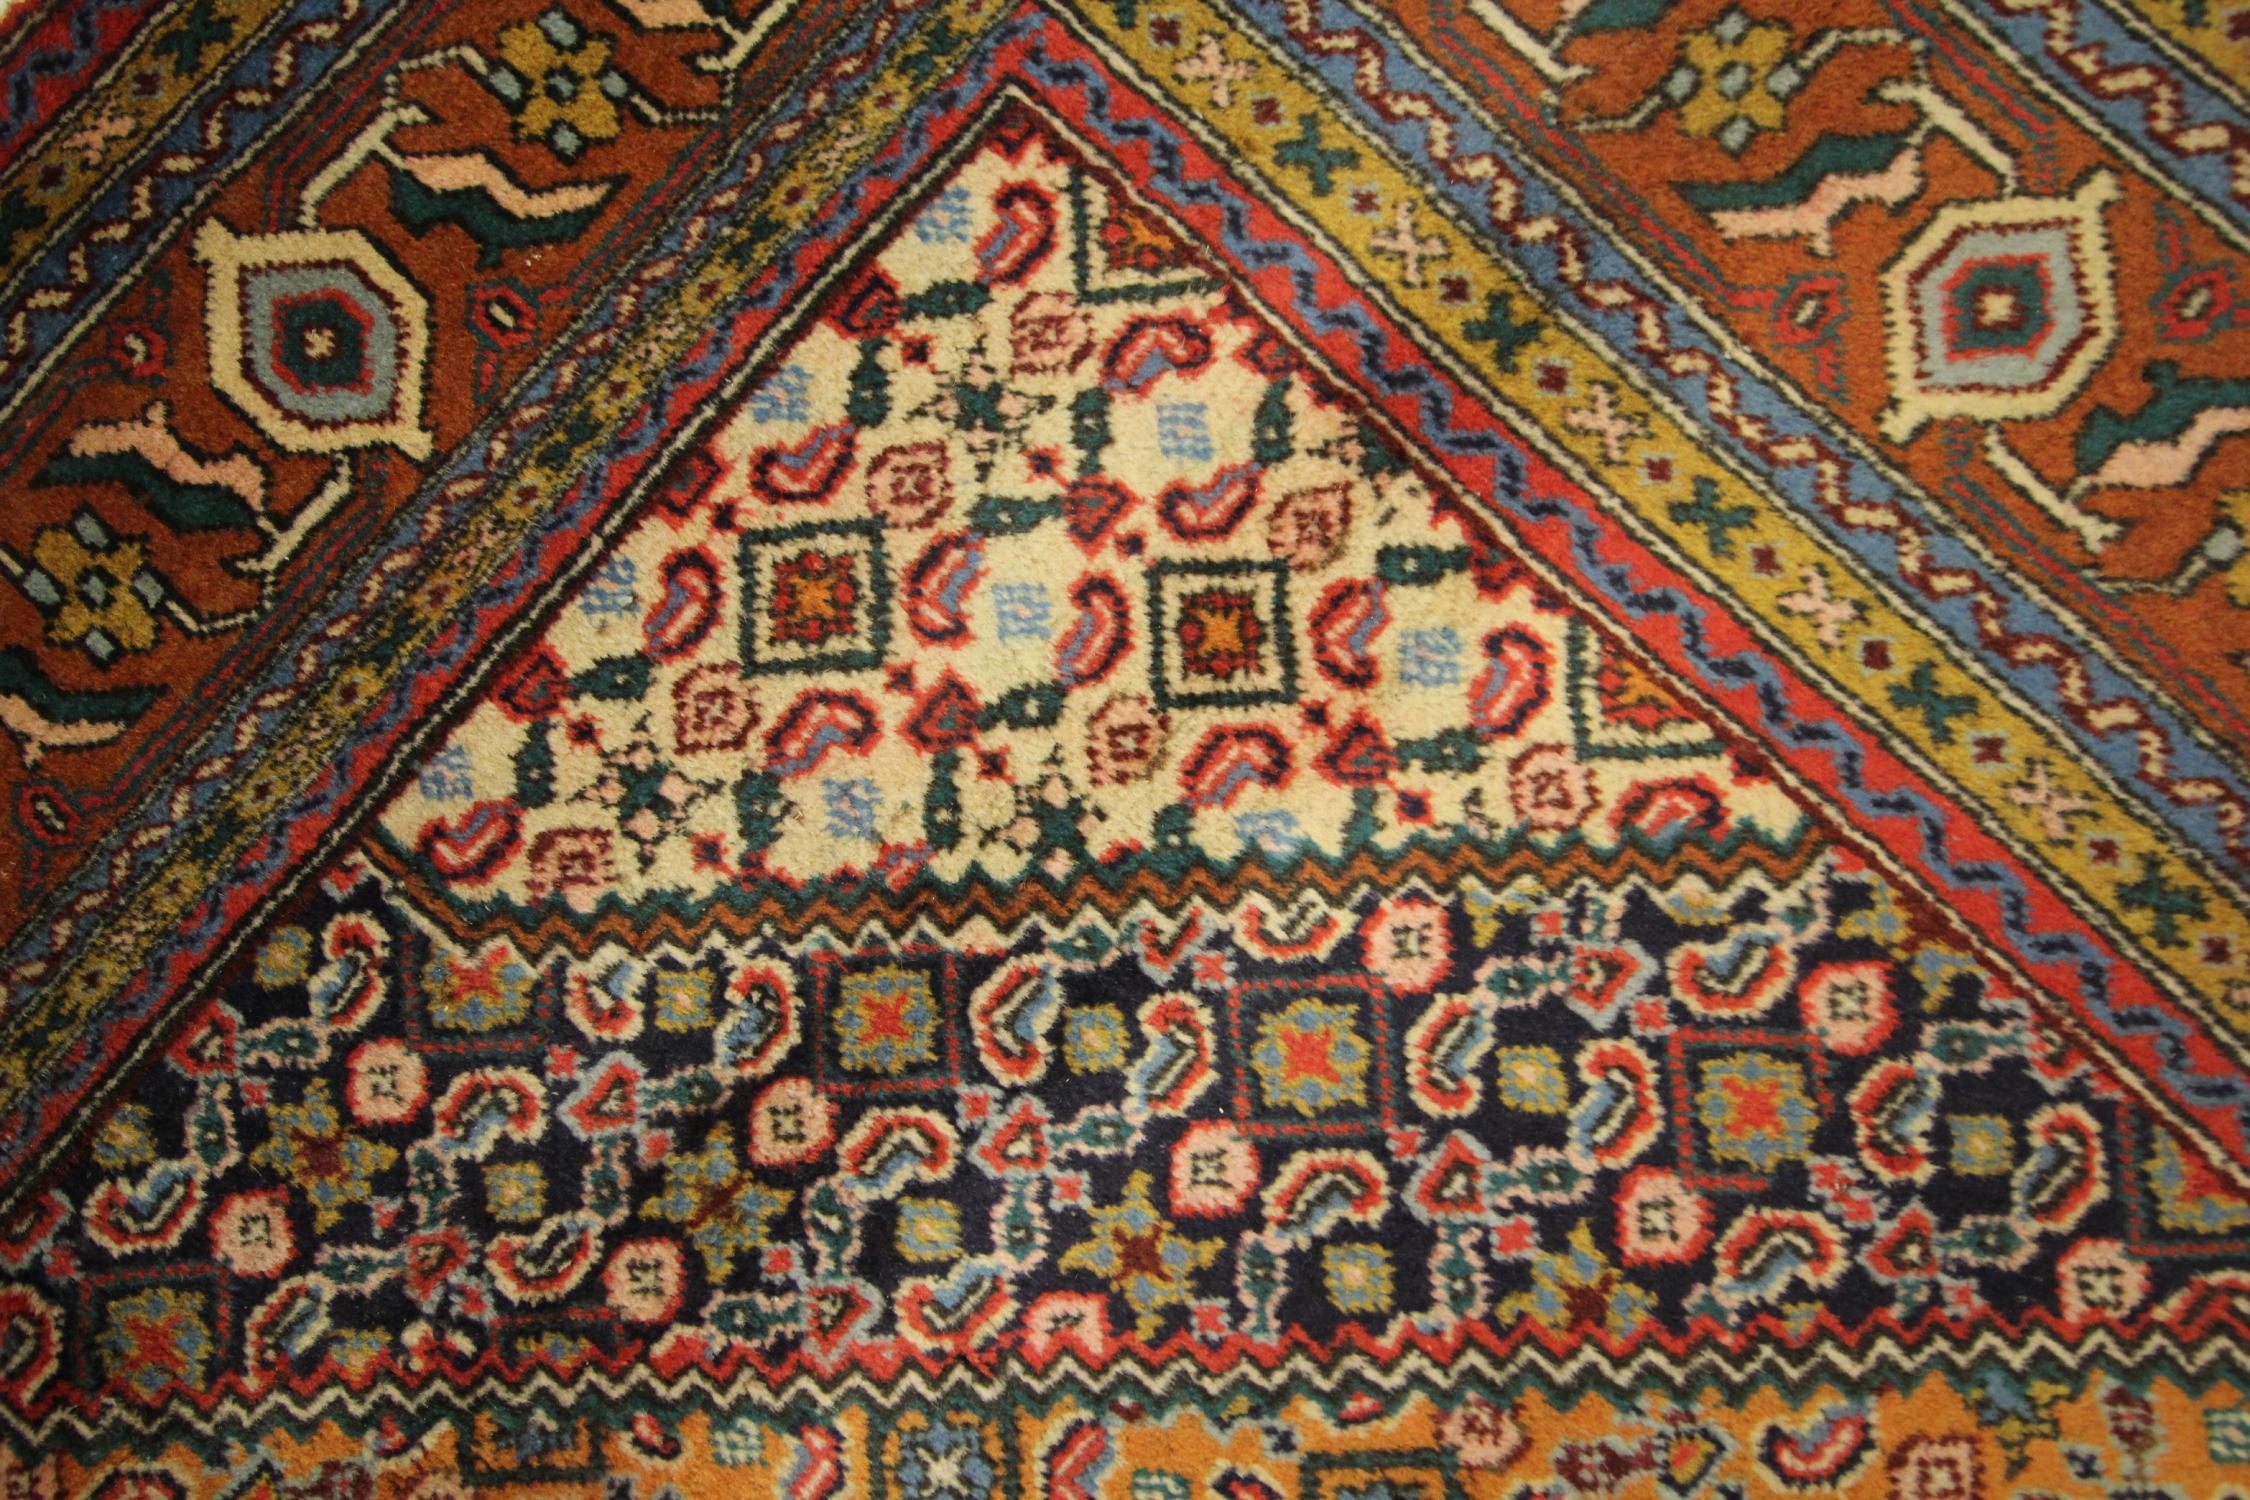 Vintage Turkish Carpet Handwoven Gold Wool Living Room Rug For Sale 1